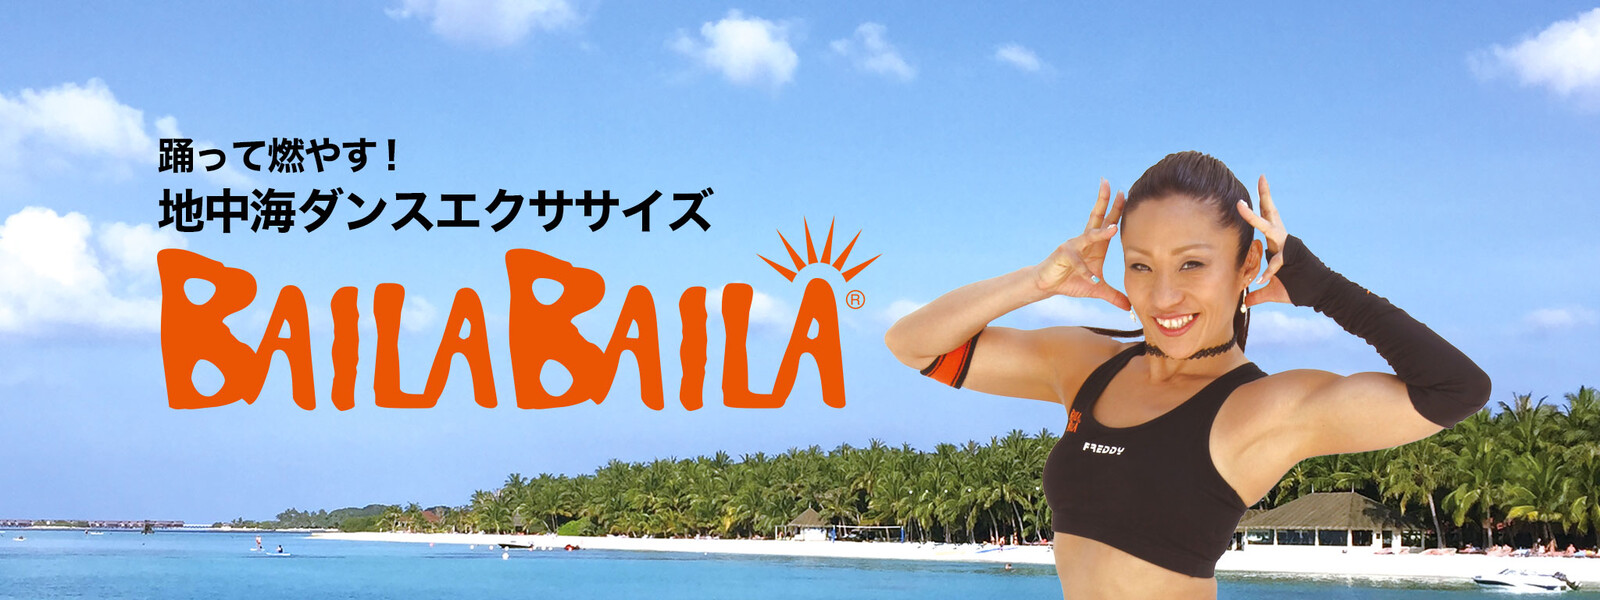 踊って燃やす! 地中海ダンスエクササイズ BAILABAILAの動画 - 凛々しく、たおやかに 美カラテFit Supported by 日本生命